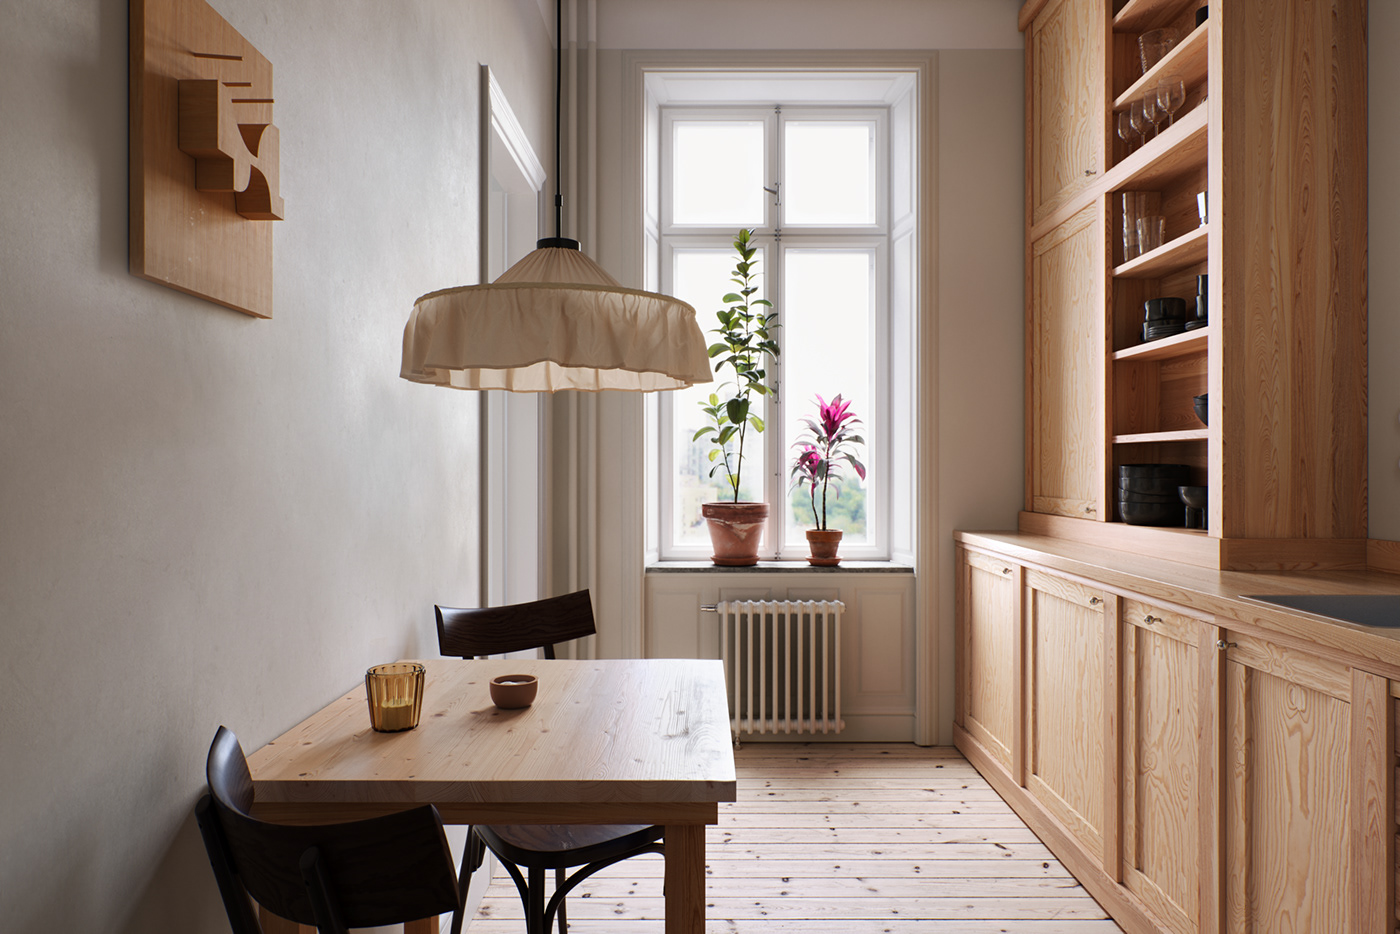 Interior visualization Render archviz Scandinavian kitchen CGI modern minimal Minimalism